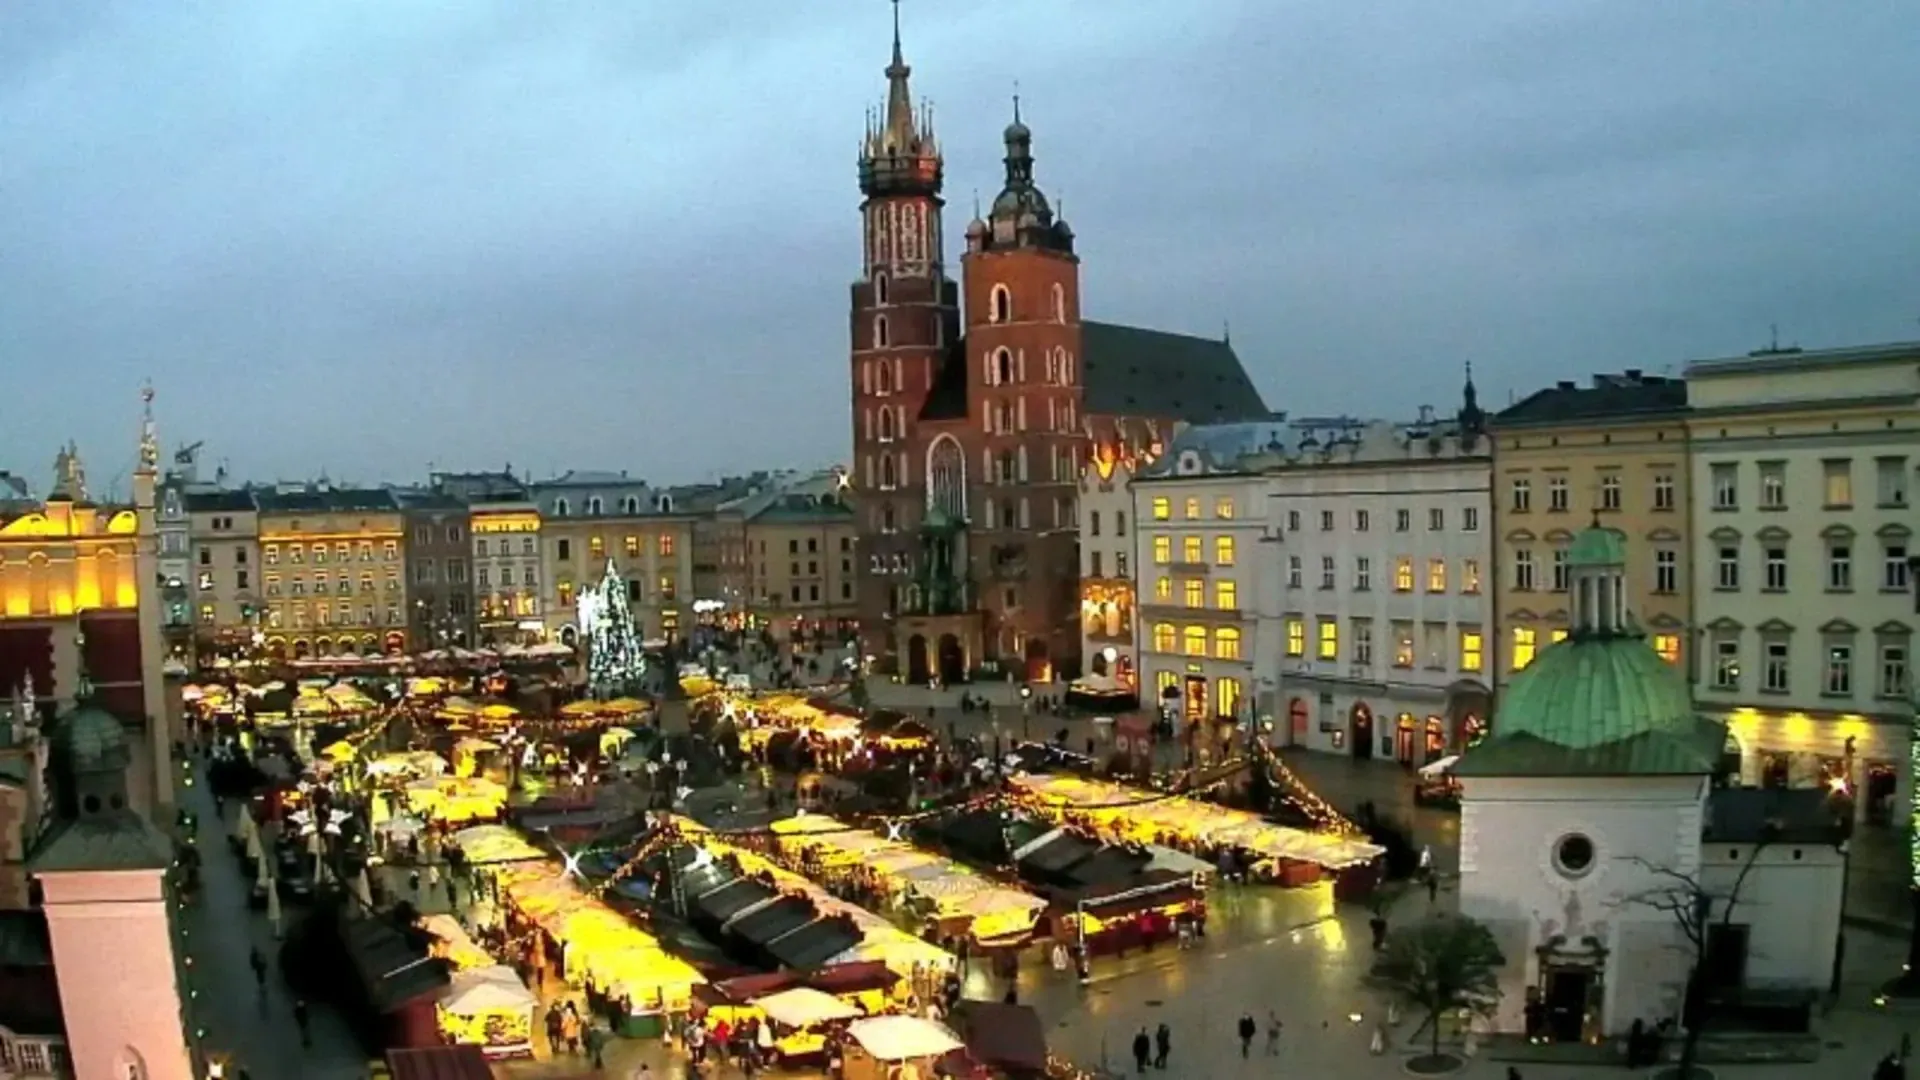 Krakow's Rynek Glowny Central Square, Krakow, Poland